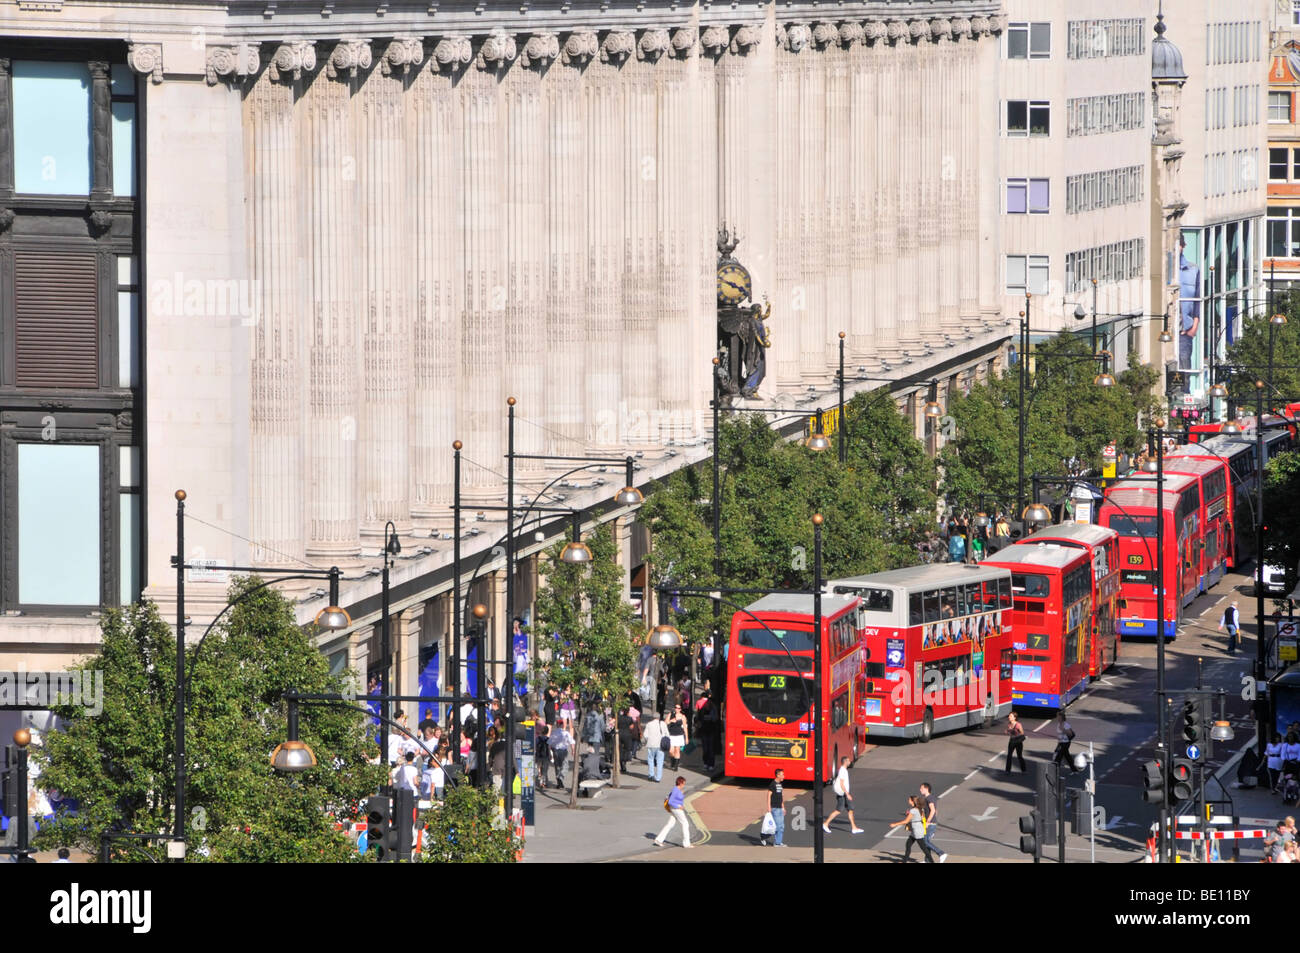 Oxford Street facciata di dal grande magazzino Selfridges con lunga coda di double decker red London bus a fermate di autobus & giunzioni England Regno Unito Foto Stock